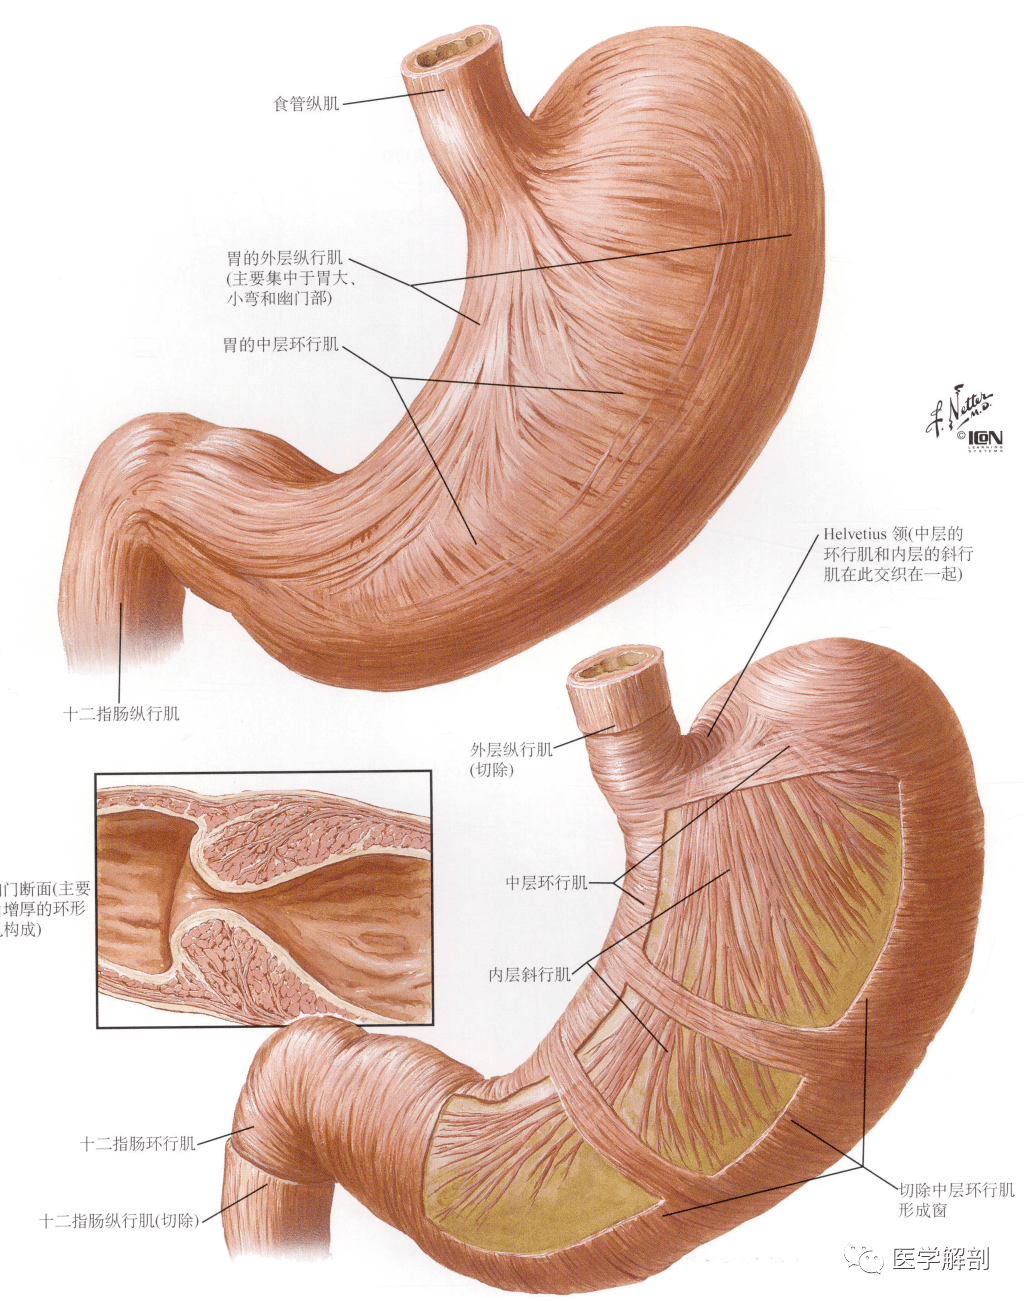 不一的黏膜皱襞,在胃小弯处多为纵行皱装,约有4~6条,襞间的沟称胃道